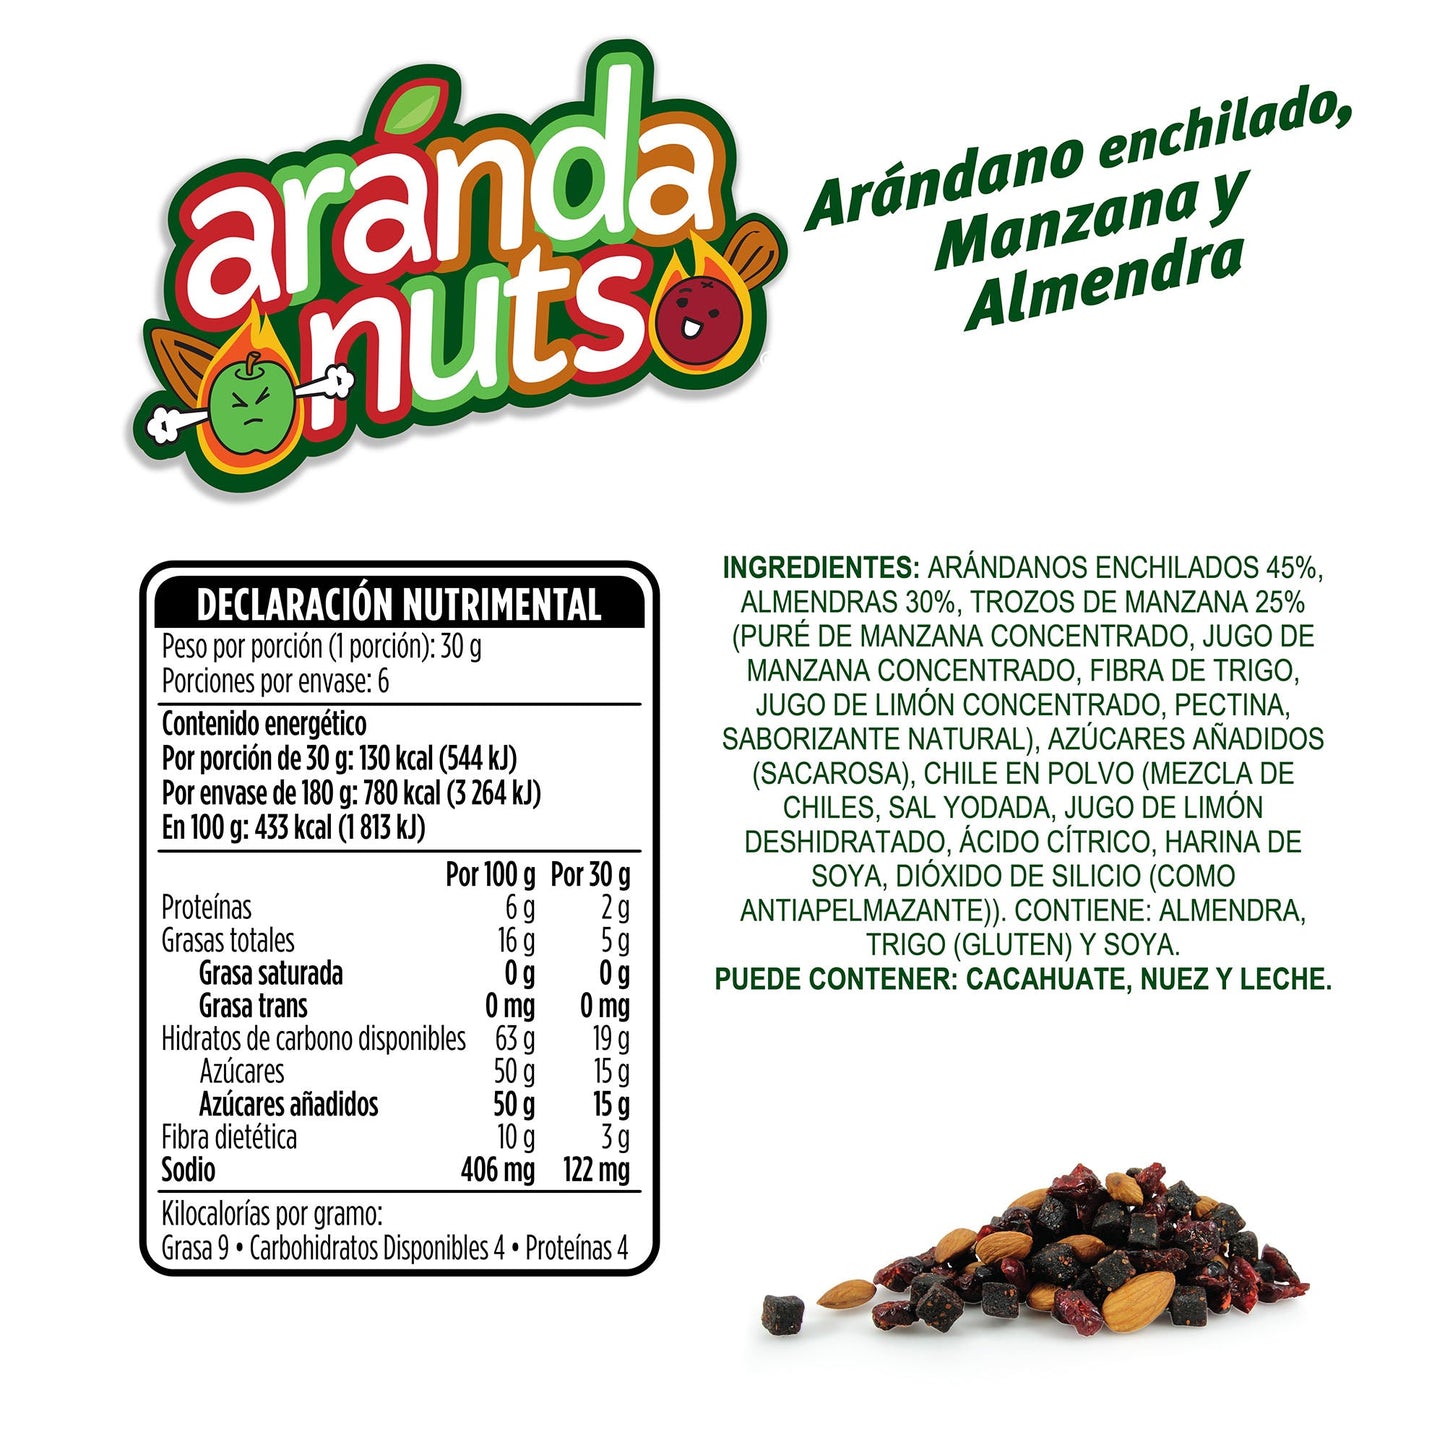 Mix de Arándanos Enchilados, Manzana Enchilada y Almendras de 1kg